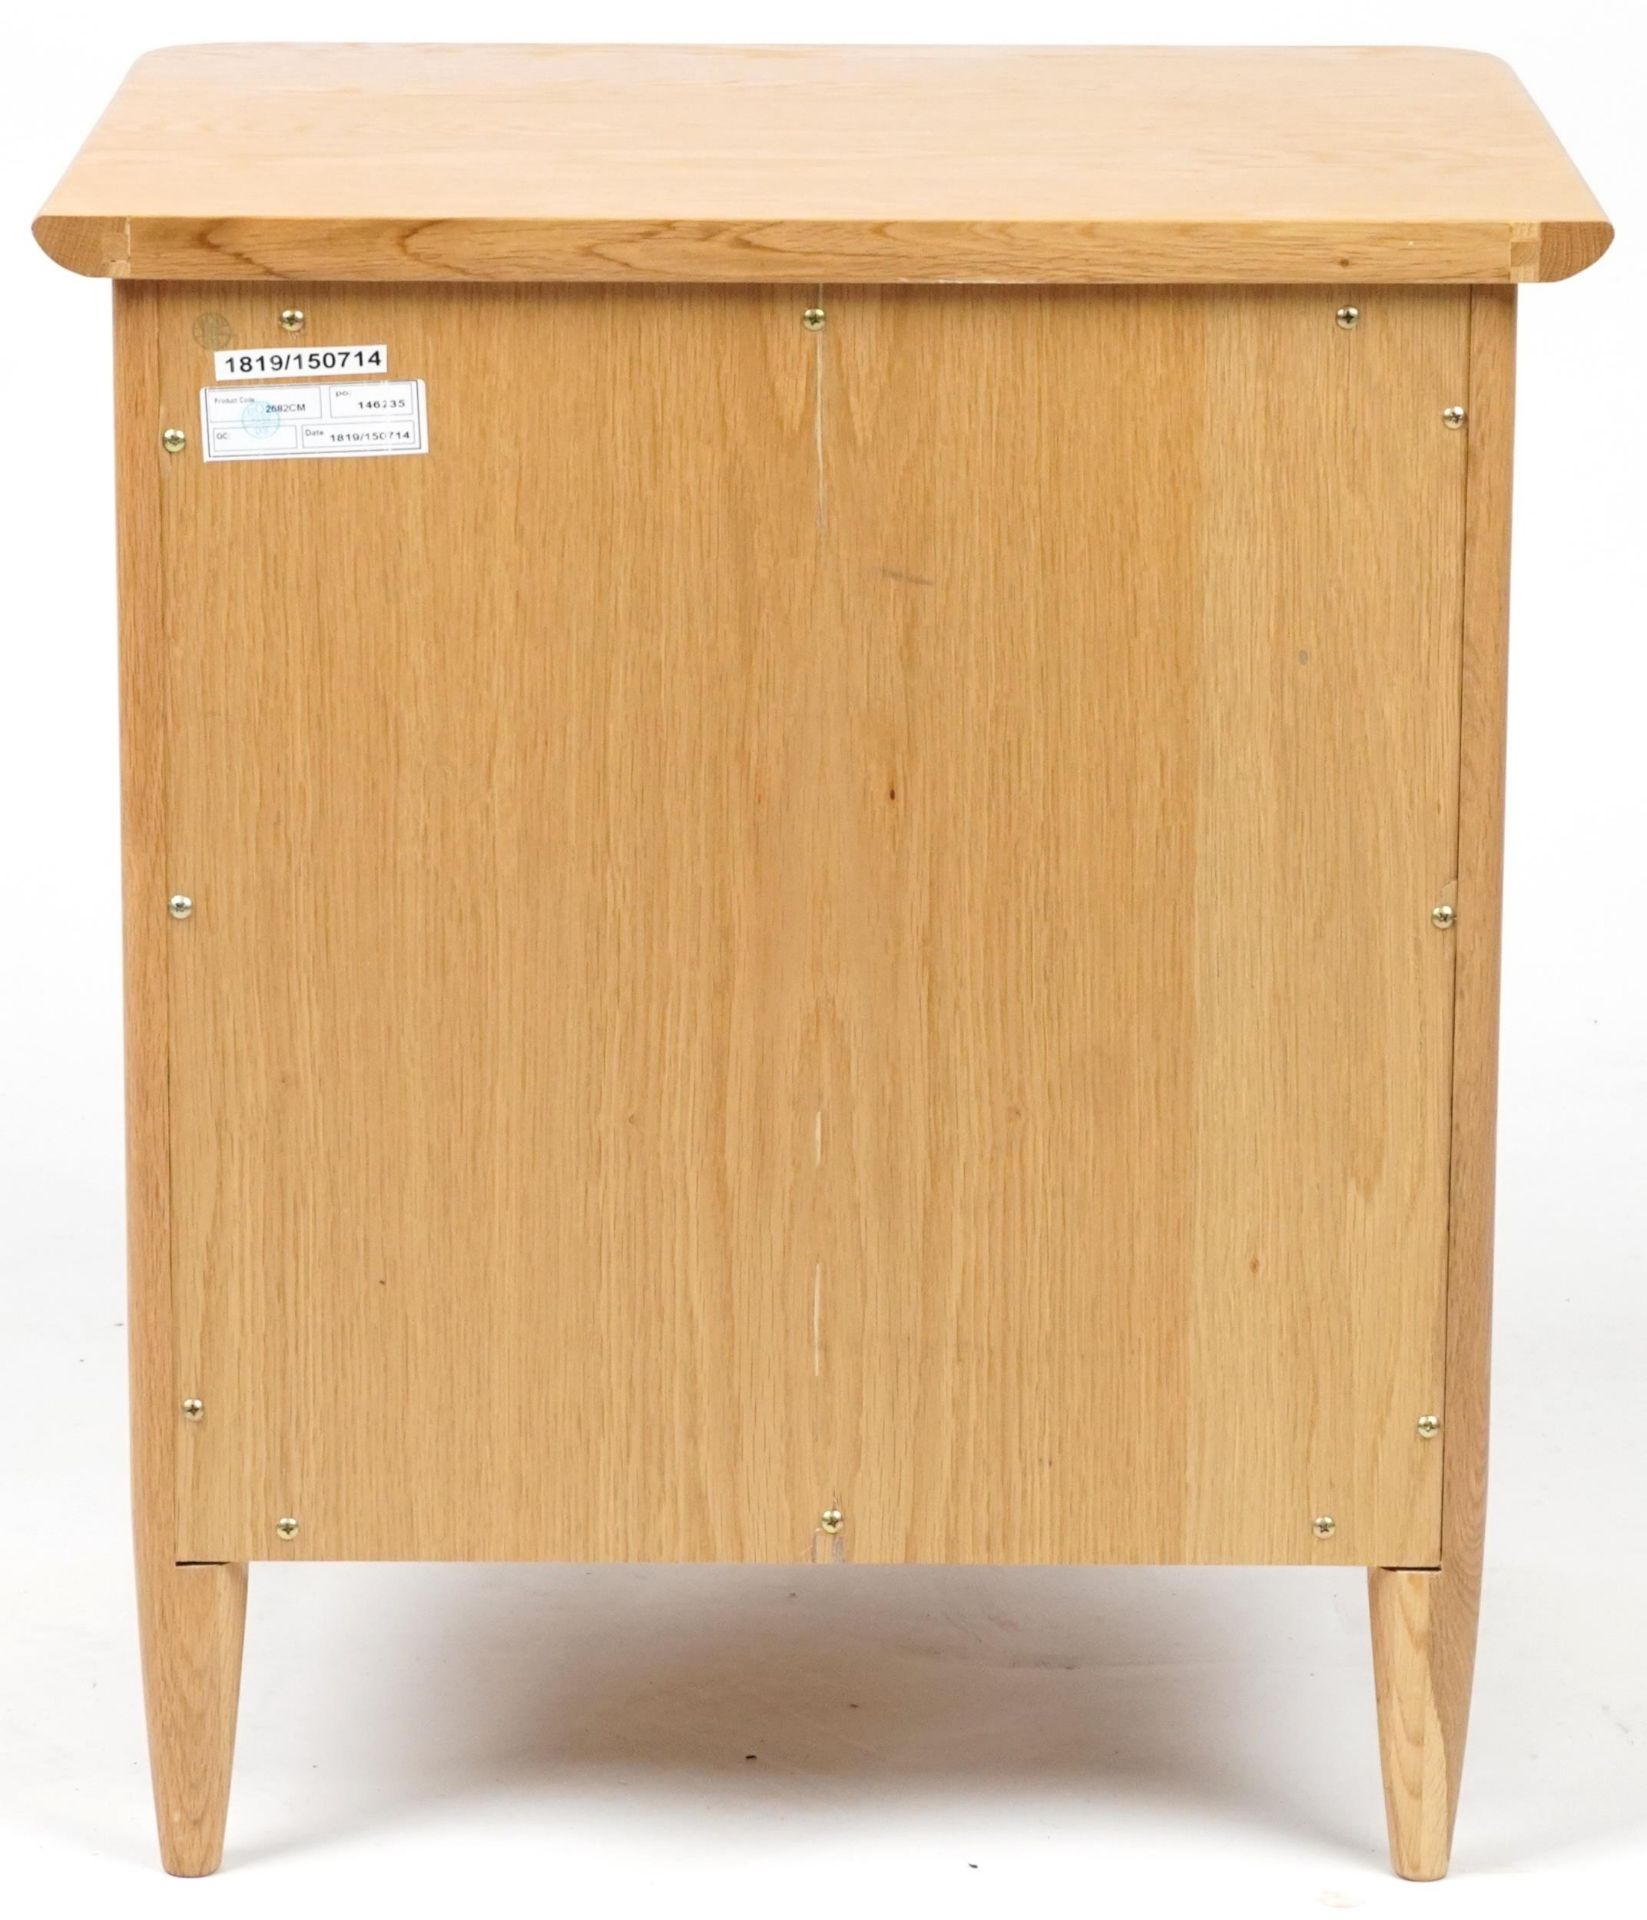 Ercol Teramo contemporary light oak two drawer bedside chest, 60cm H x 53cm W x 47cm D - Bild 4 aus 6